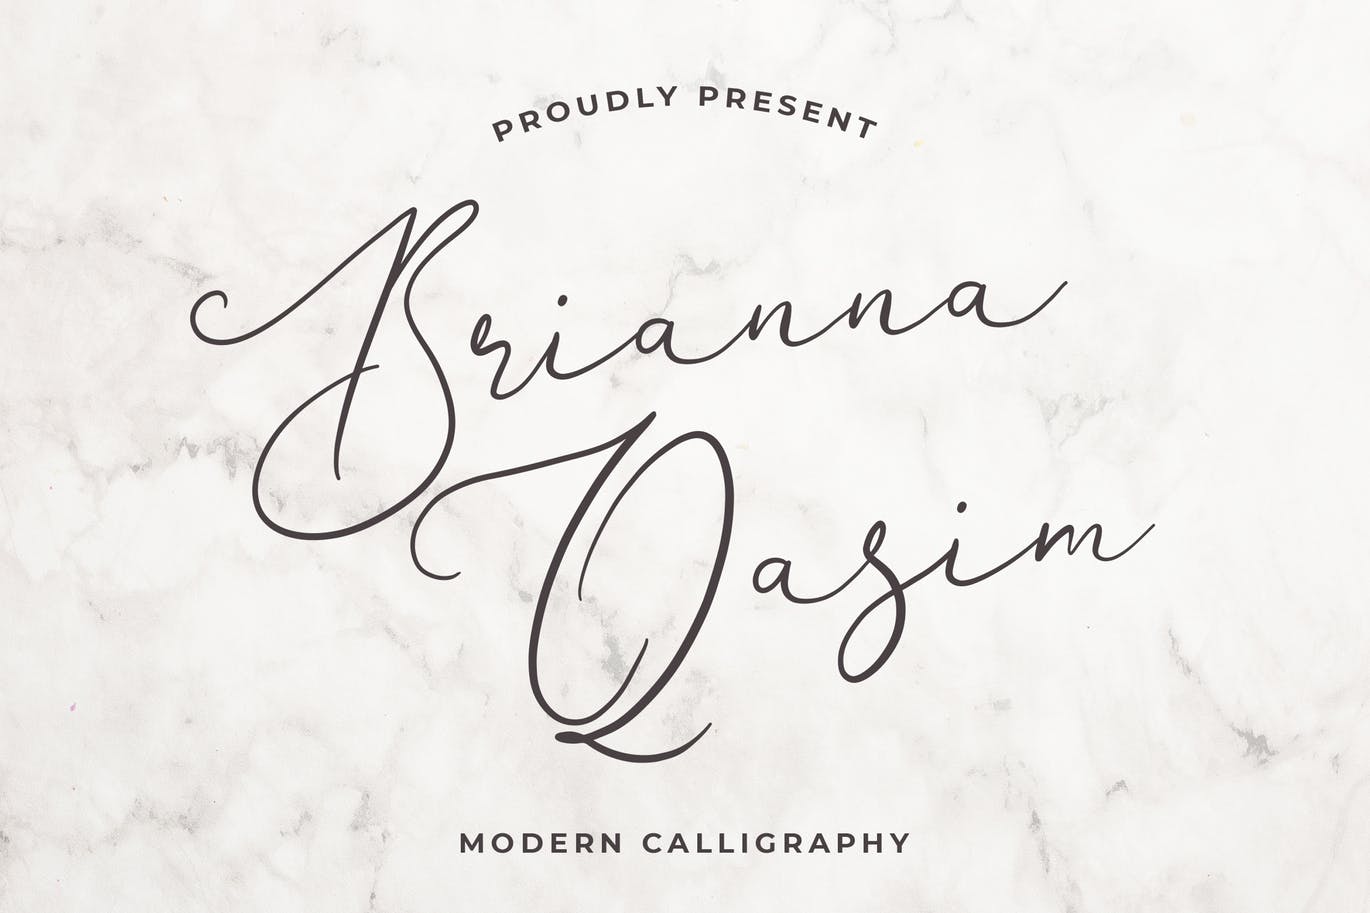 独特手写连笔书法英文字体非凡图库精选 Brianna Qasim Beautiful Calligraphy Font插图